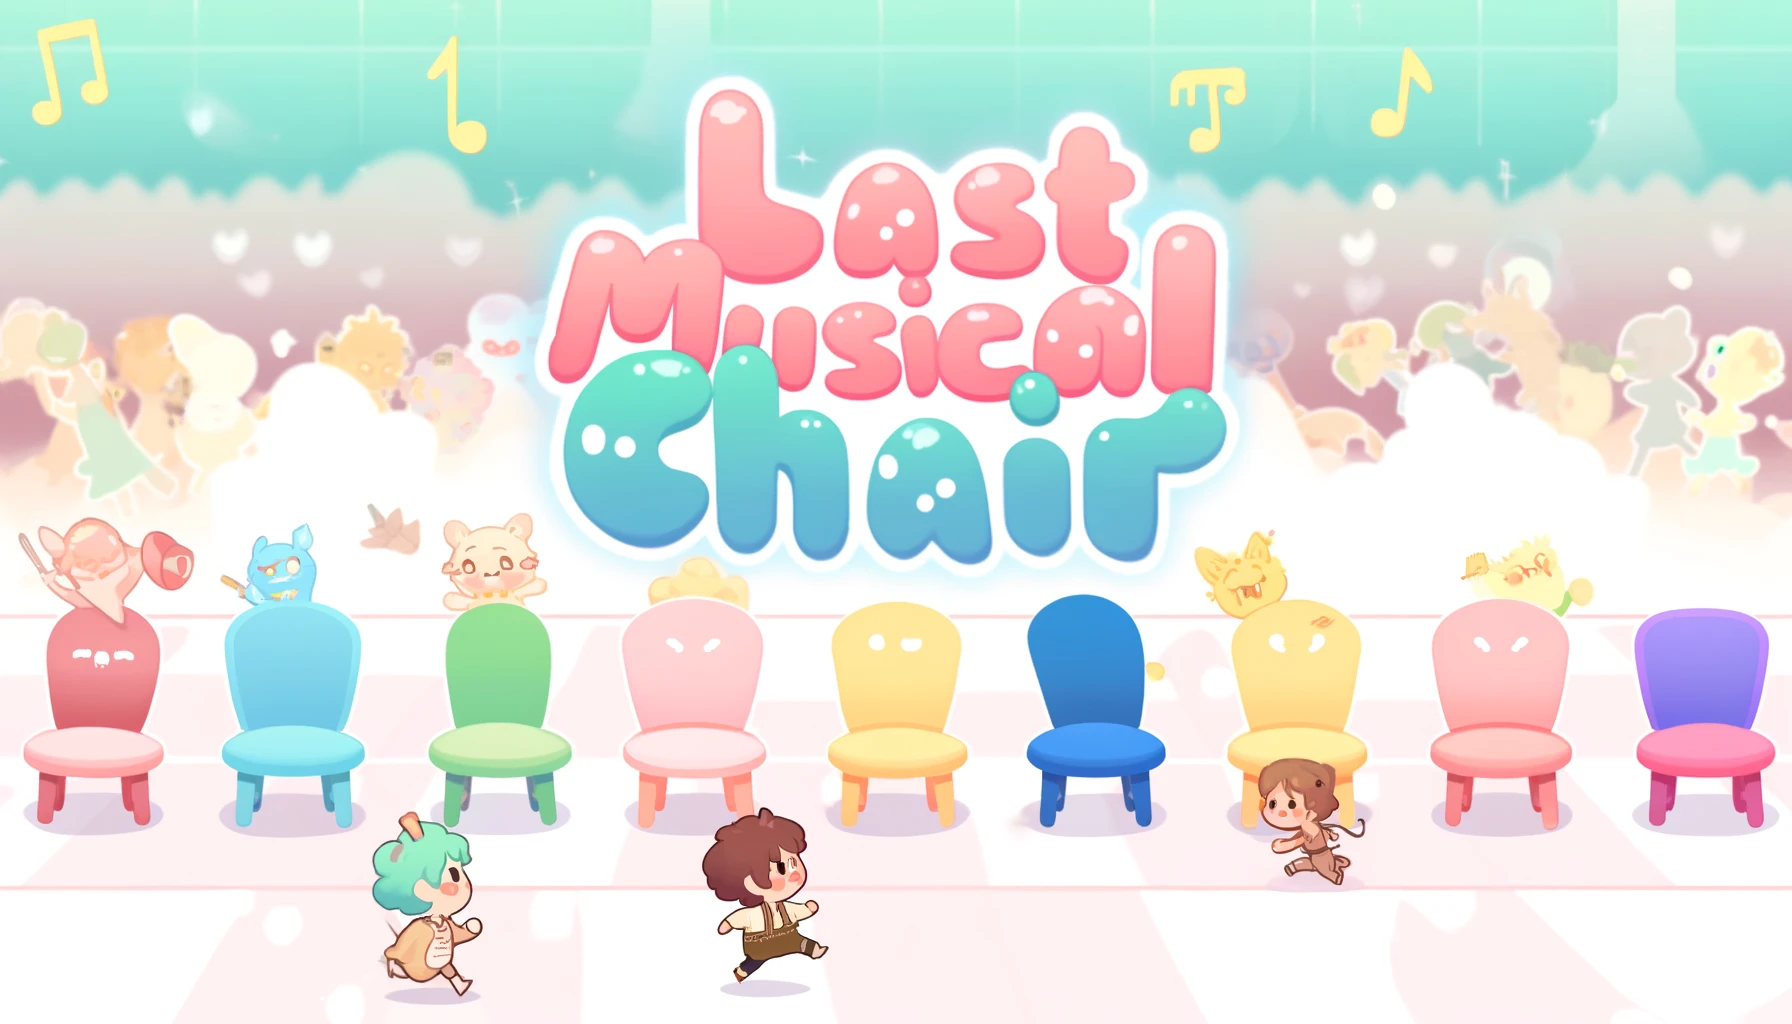 Last Musical Chair